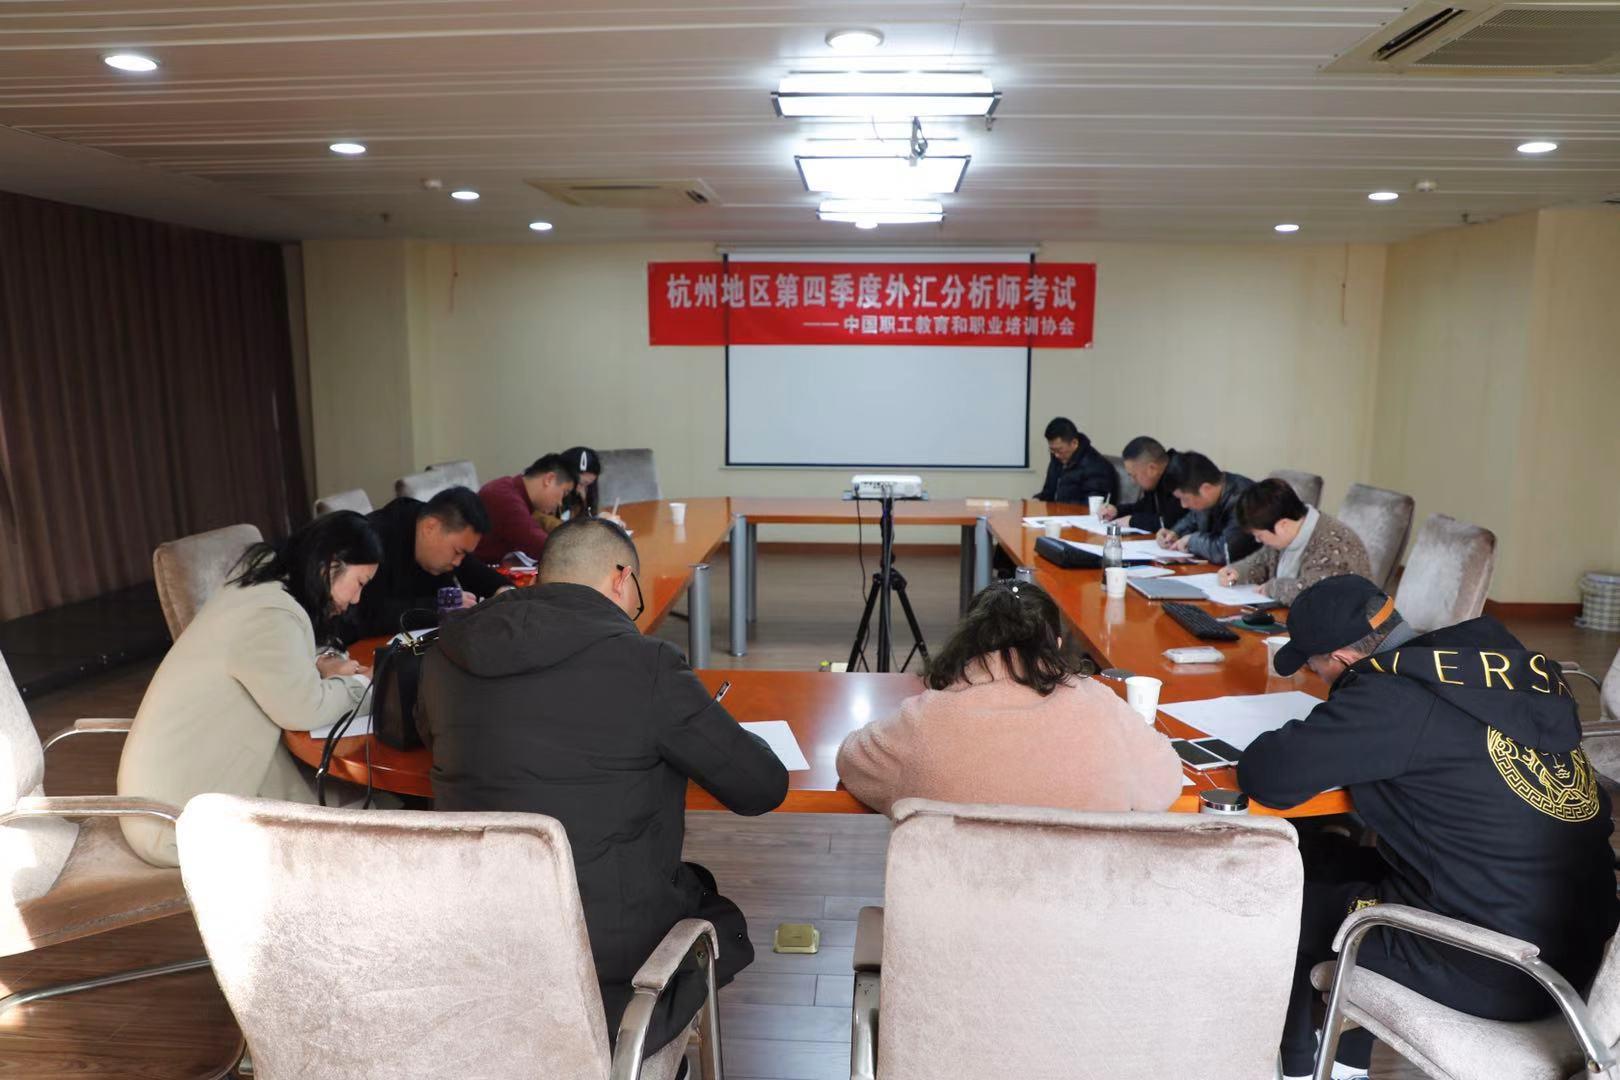 中国职工教育和职业培训协会——杭州地区第四季度外汇分析师考试于2019年12月5日在摩瑞学院开考。